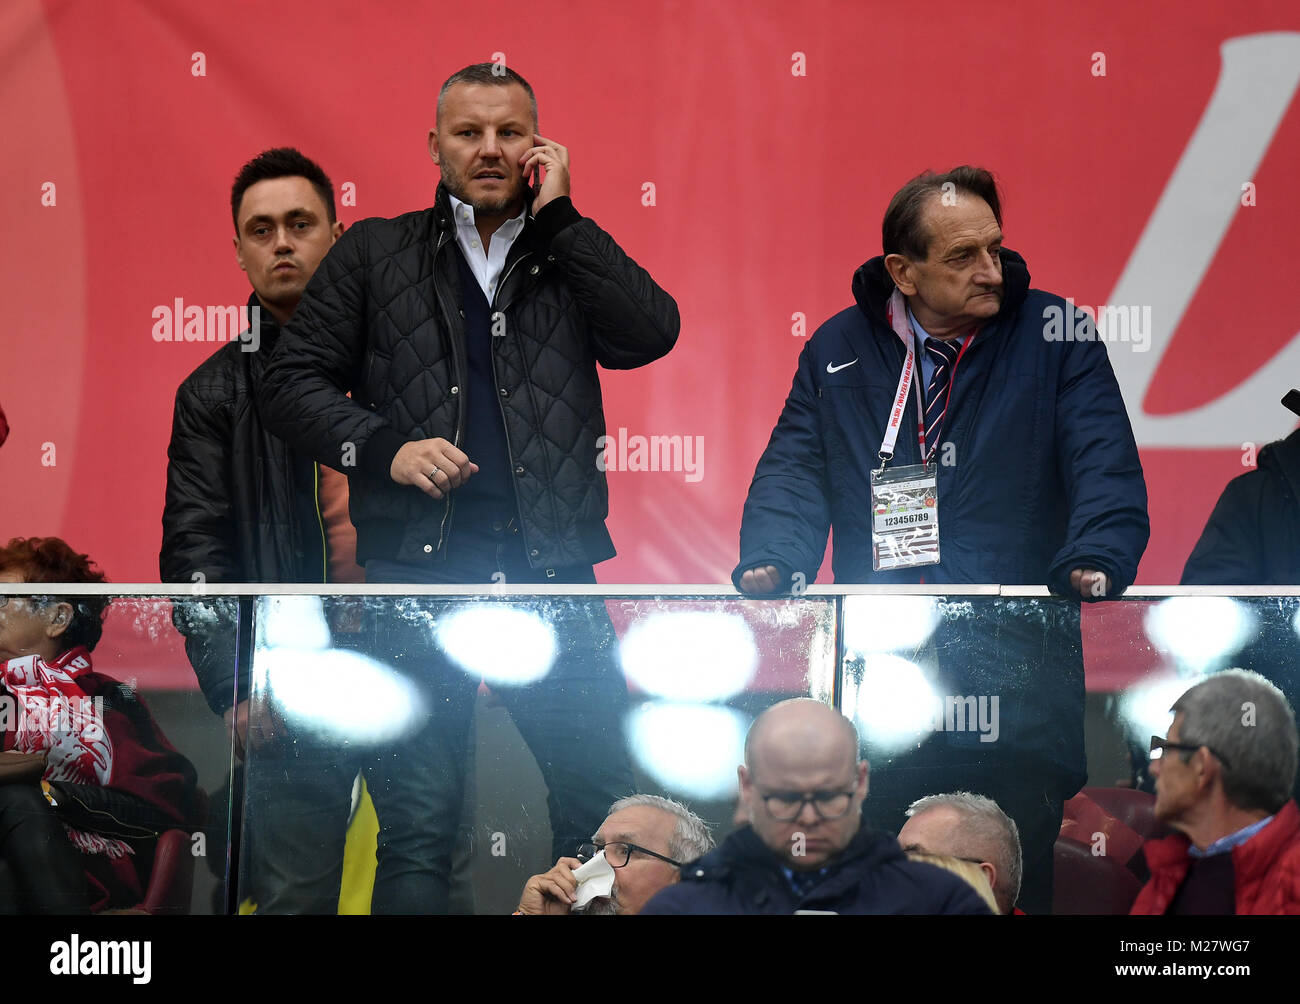 8 Oktober, 2017 - Warschau, Polen: Fußball WM 2018 Qualifikation Rusia Polen - Montenegro o/p Tomasz Klos Stockfoto